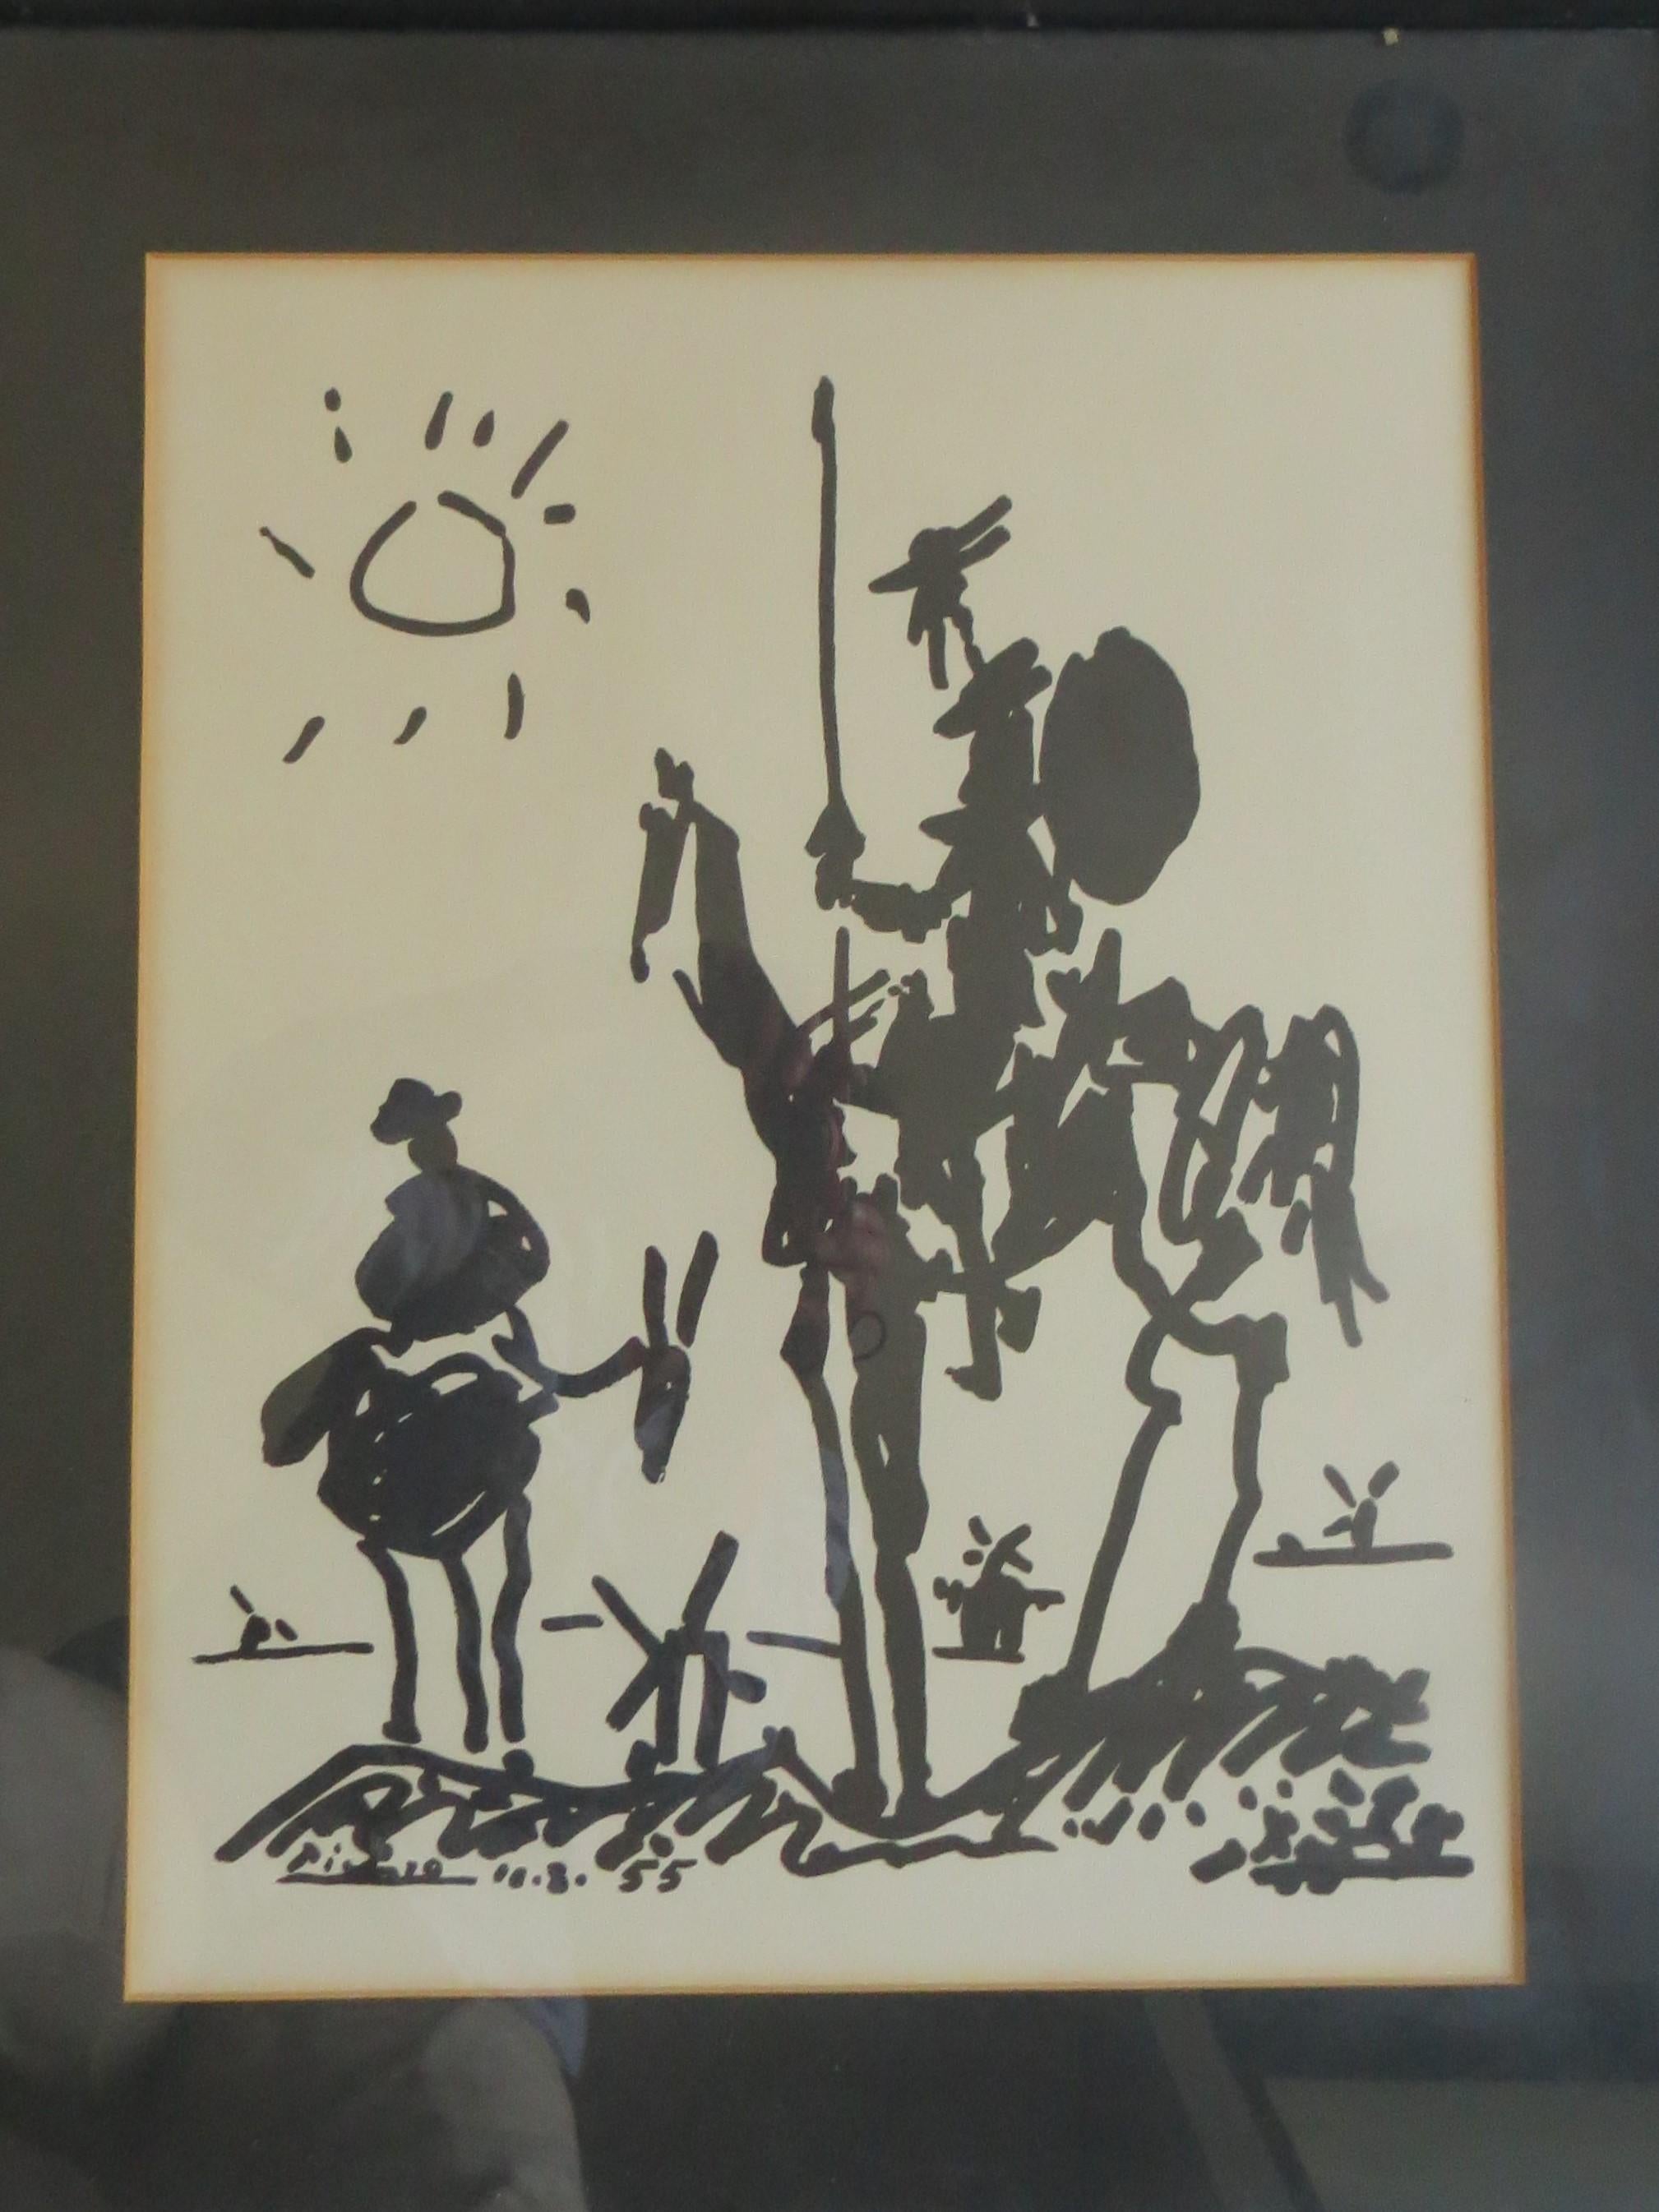 PABLO PICASSO Don quixote lithograph - Print by Pablo Picasso